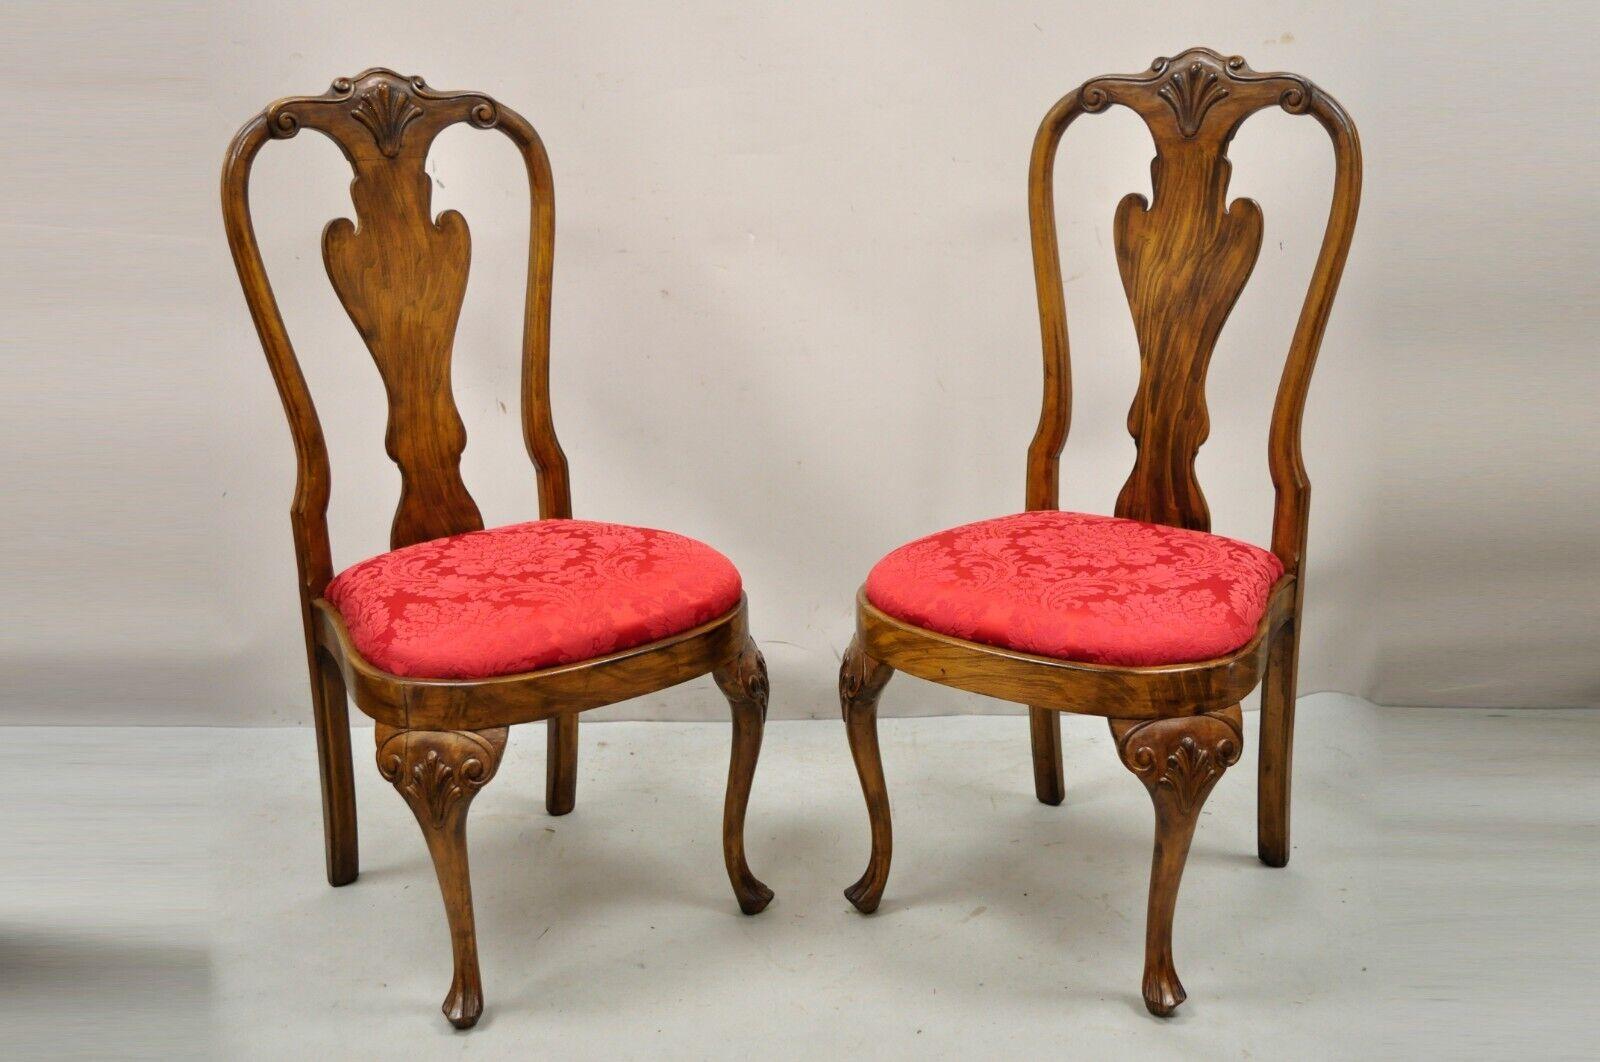 Chaises de salle à manger vintage de style Queen Anne en bois massif sculpté de coquillages - ensemble de 8. Cet article comprend (8) chaises latérales, genoux sculptés, dossiers sculptés, sièges rembourrés rouges, accents sculptés de coquillages,